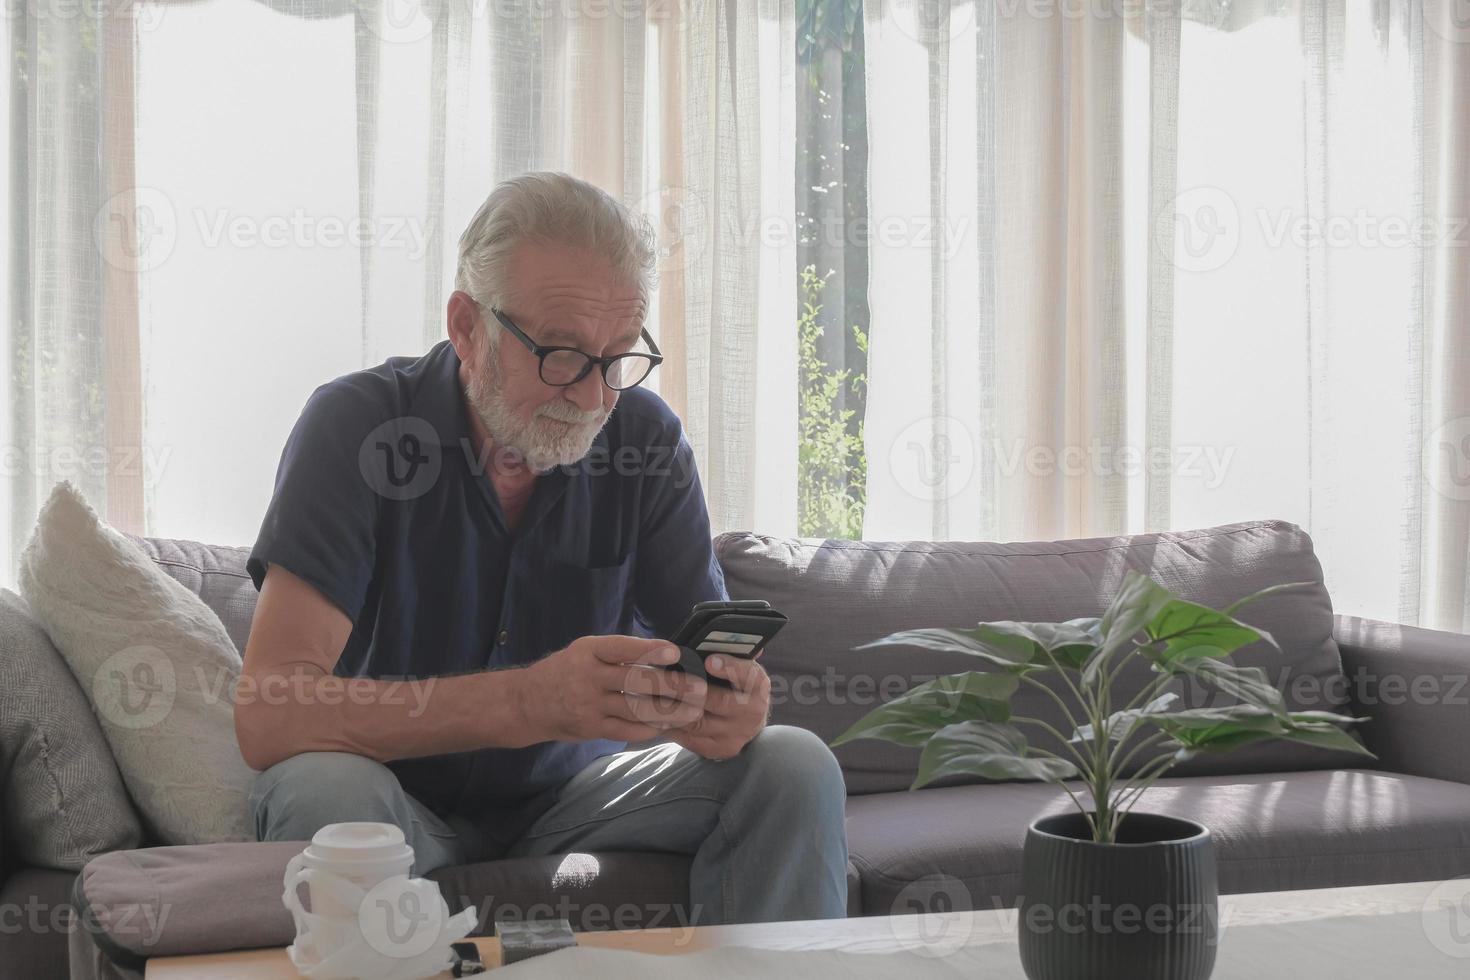 fotografia de estilo de vida de um velho caucasiano vivendo sozinho em férias, usando smartphone, cigarro e xícara de café colocada sobre a mesa na sala de estar casa aconchegante e dia ensolarado. foto